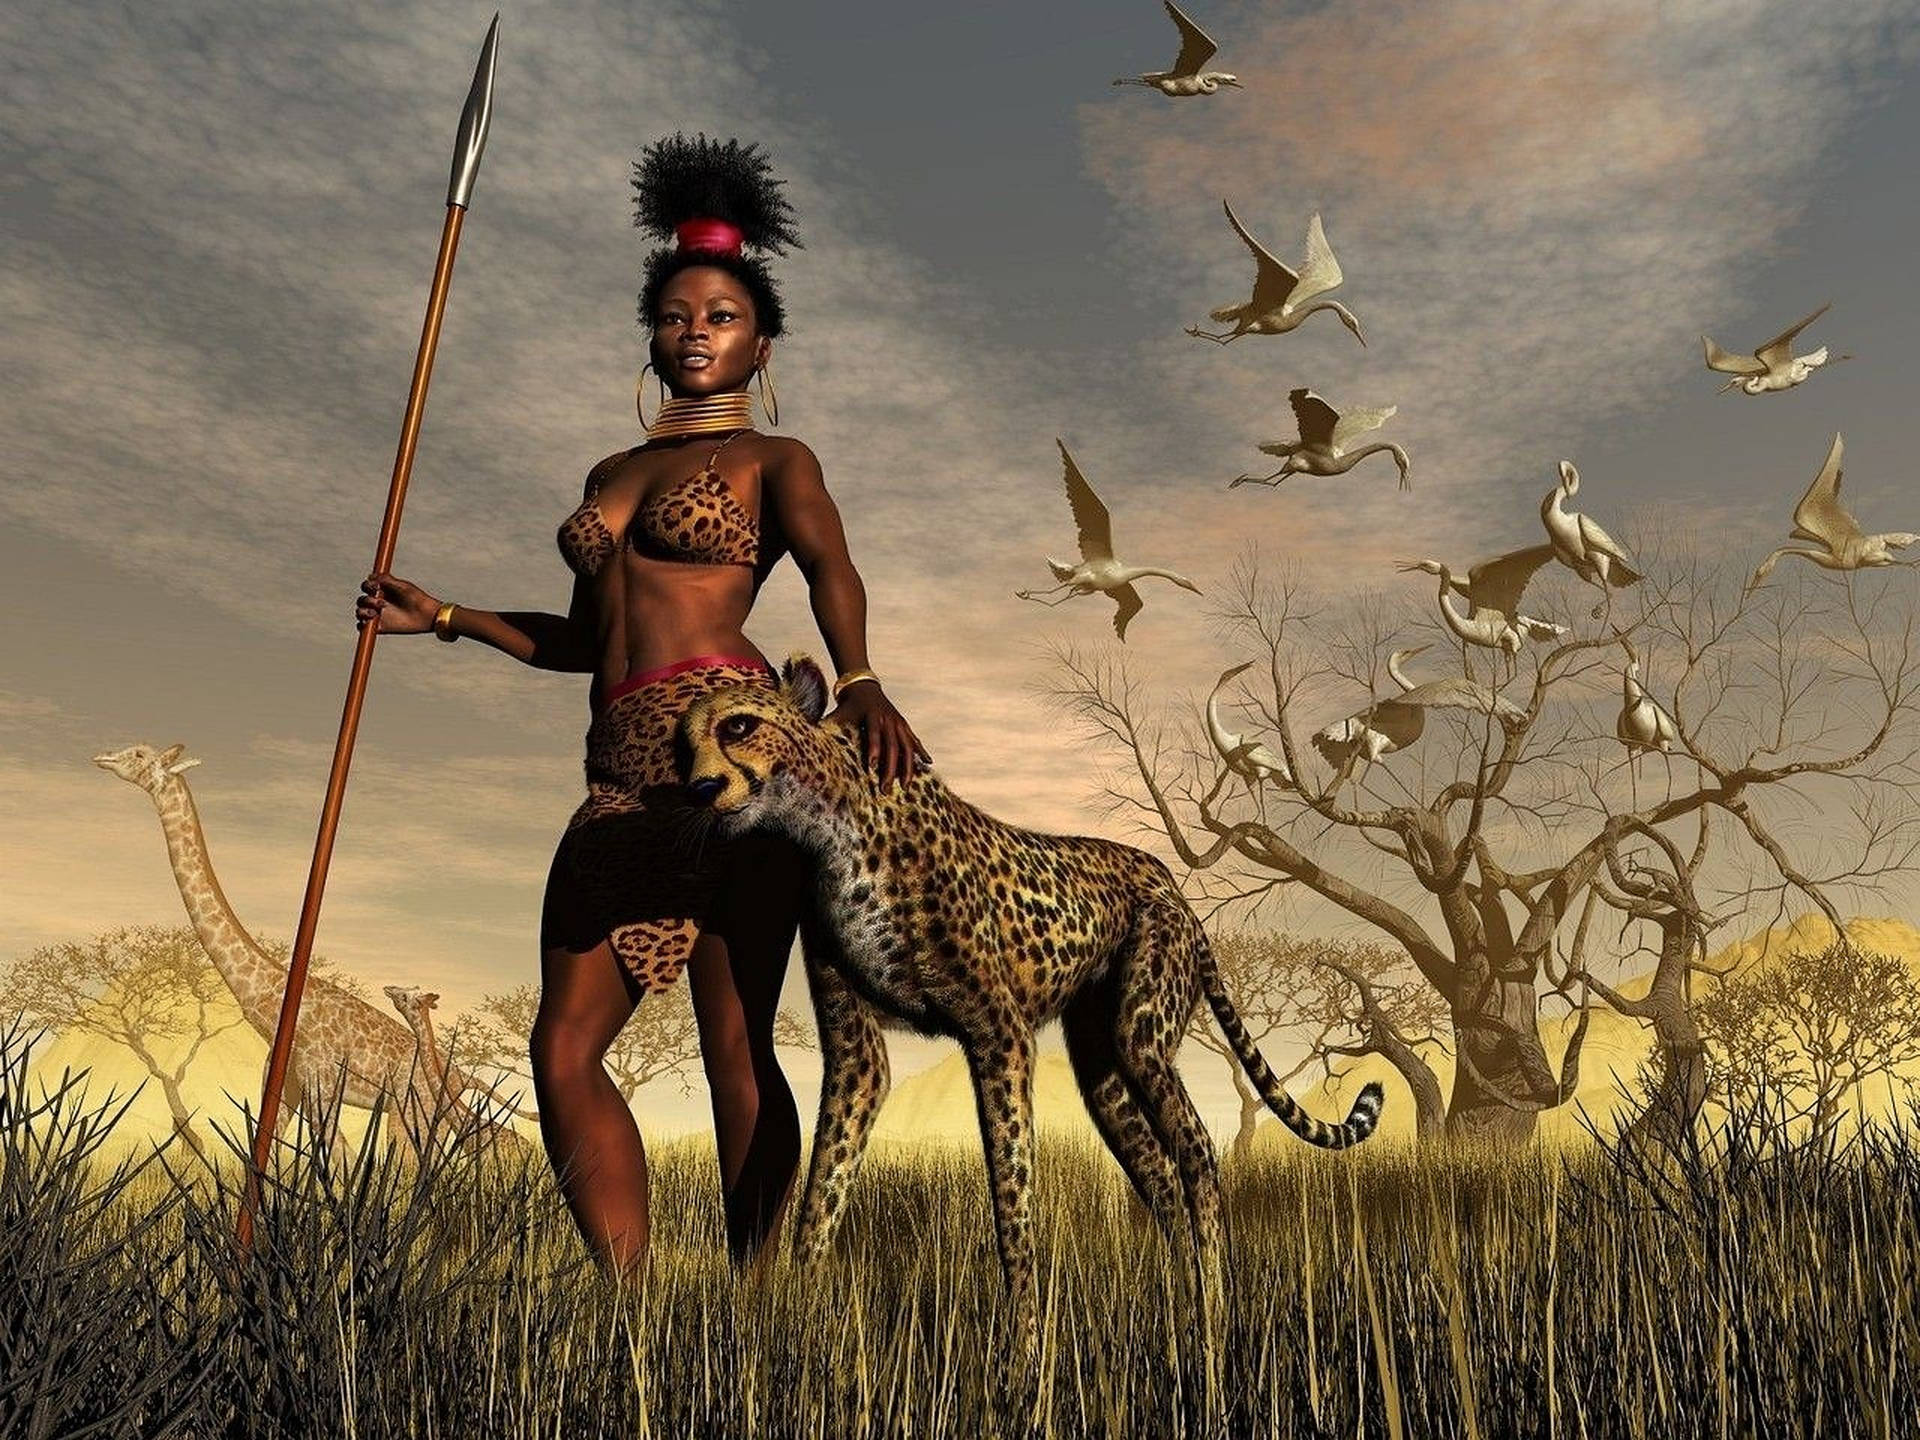 Female African Warrior Art Wallpaper